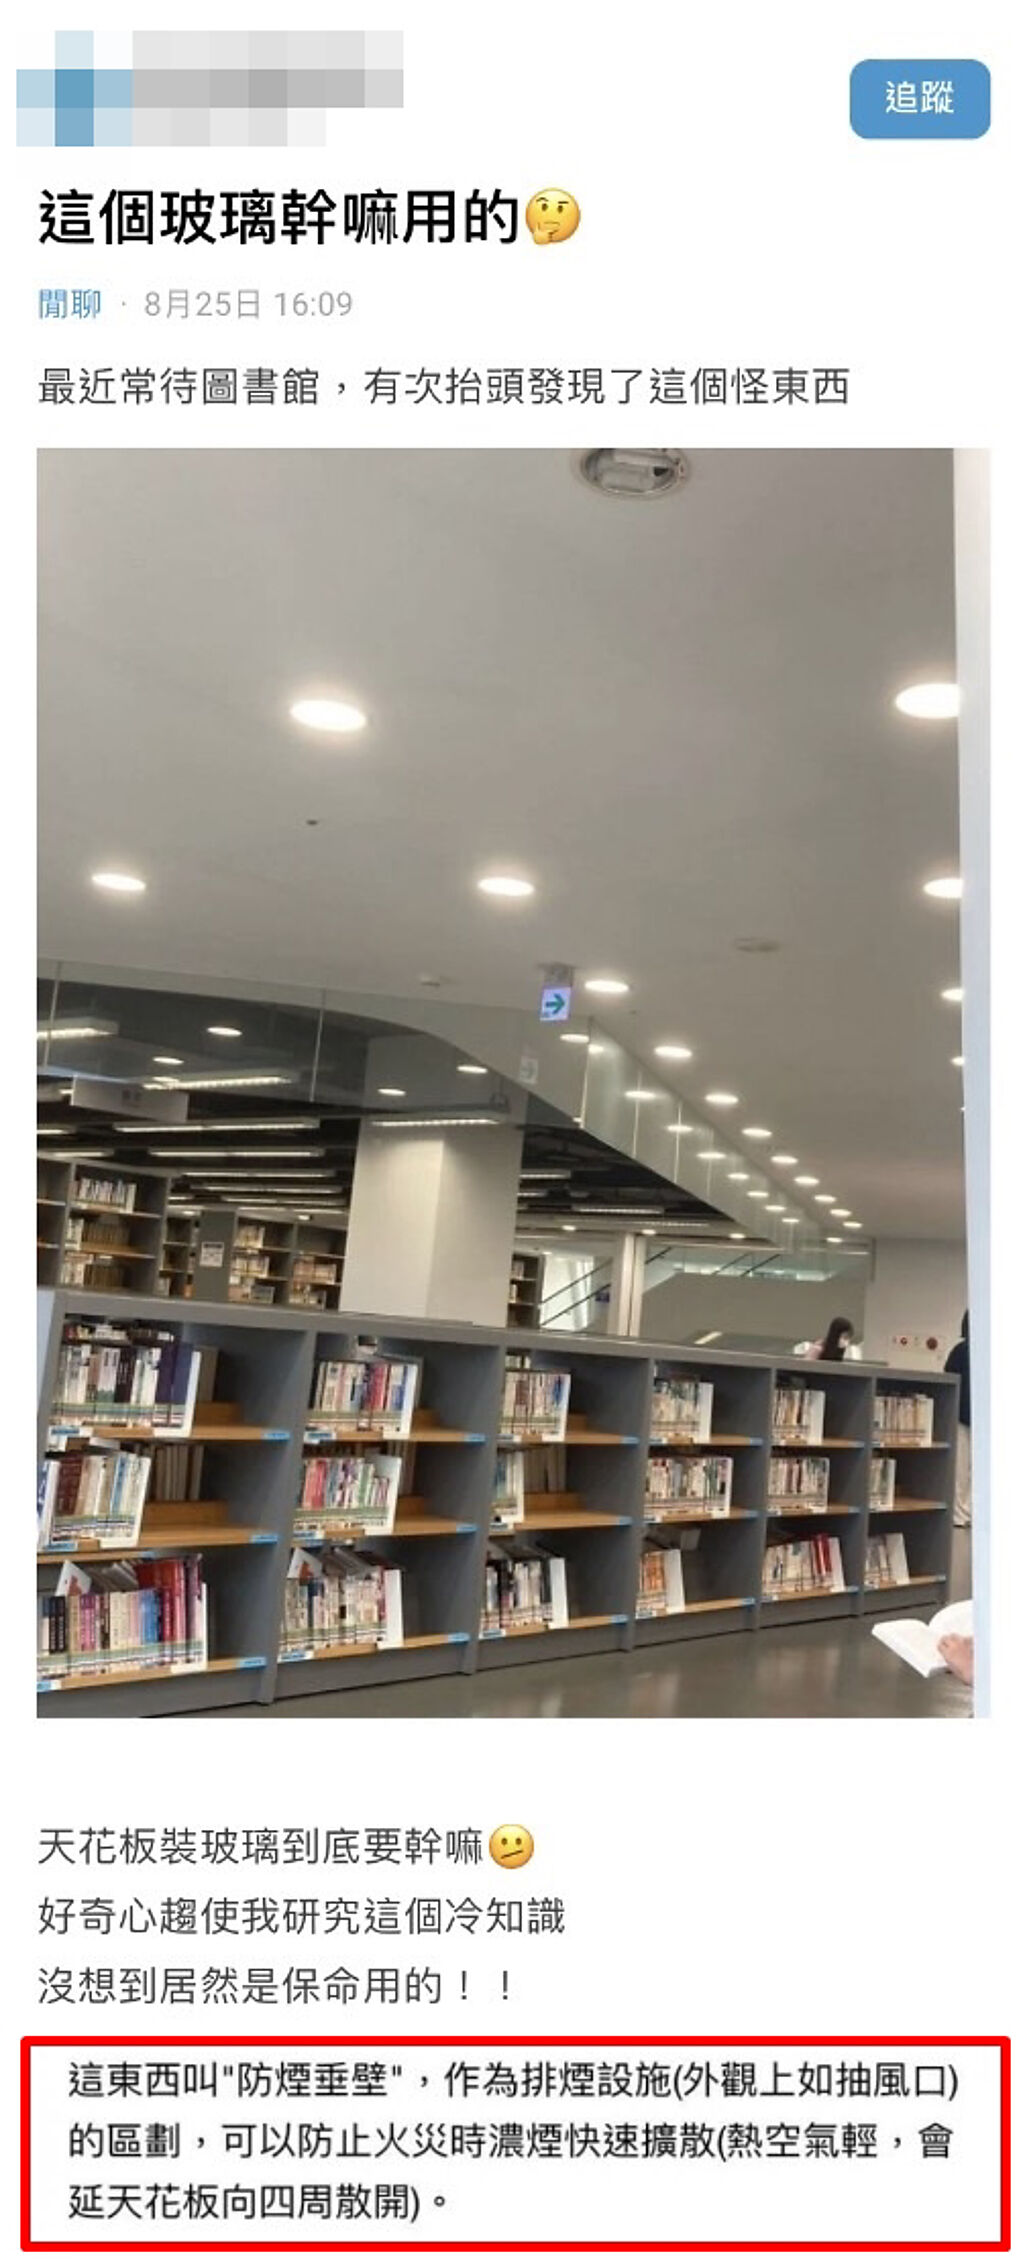 1名網友日前在圖書館上方有一整片透明玻璃「倒插」在天花板，好奇查詢才得知該裝置是「防煙垂壁」，可阻隔火災時的濃煙擴散。（翻攝自Dcard）